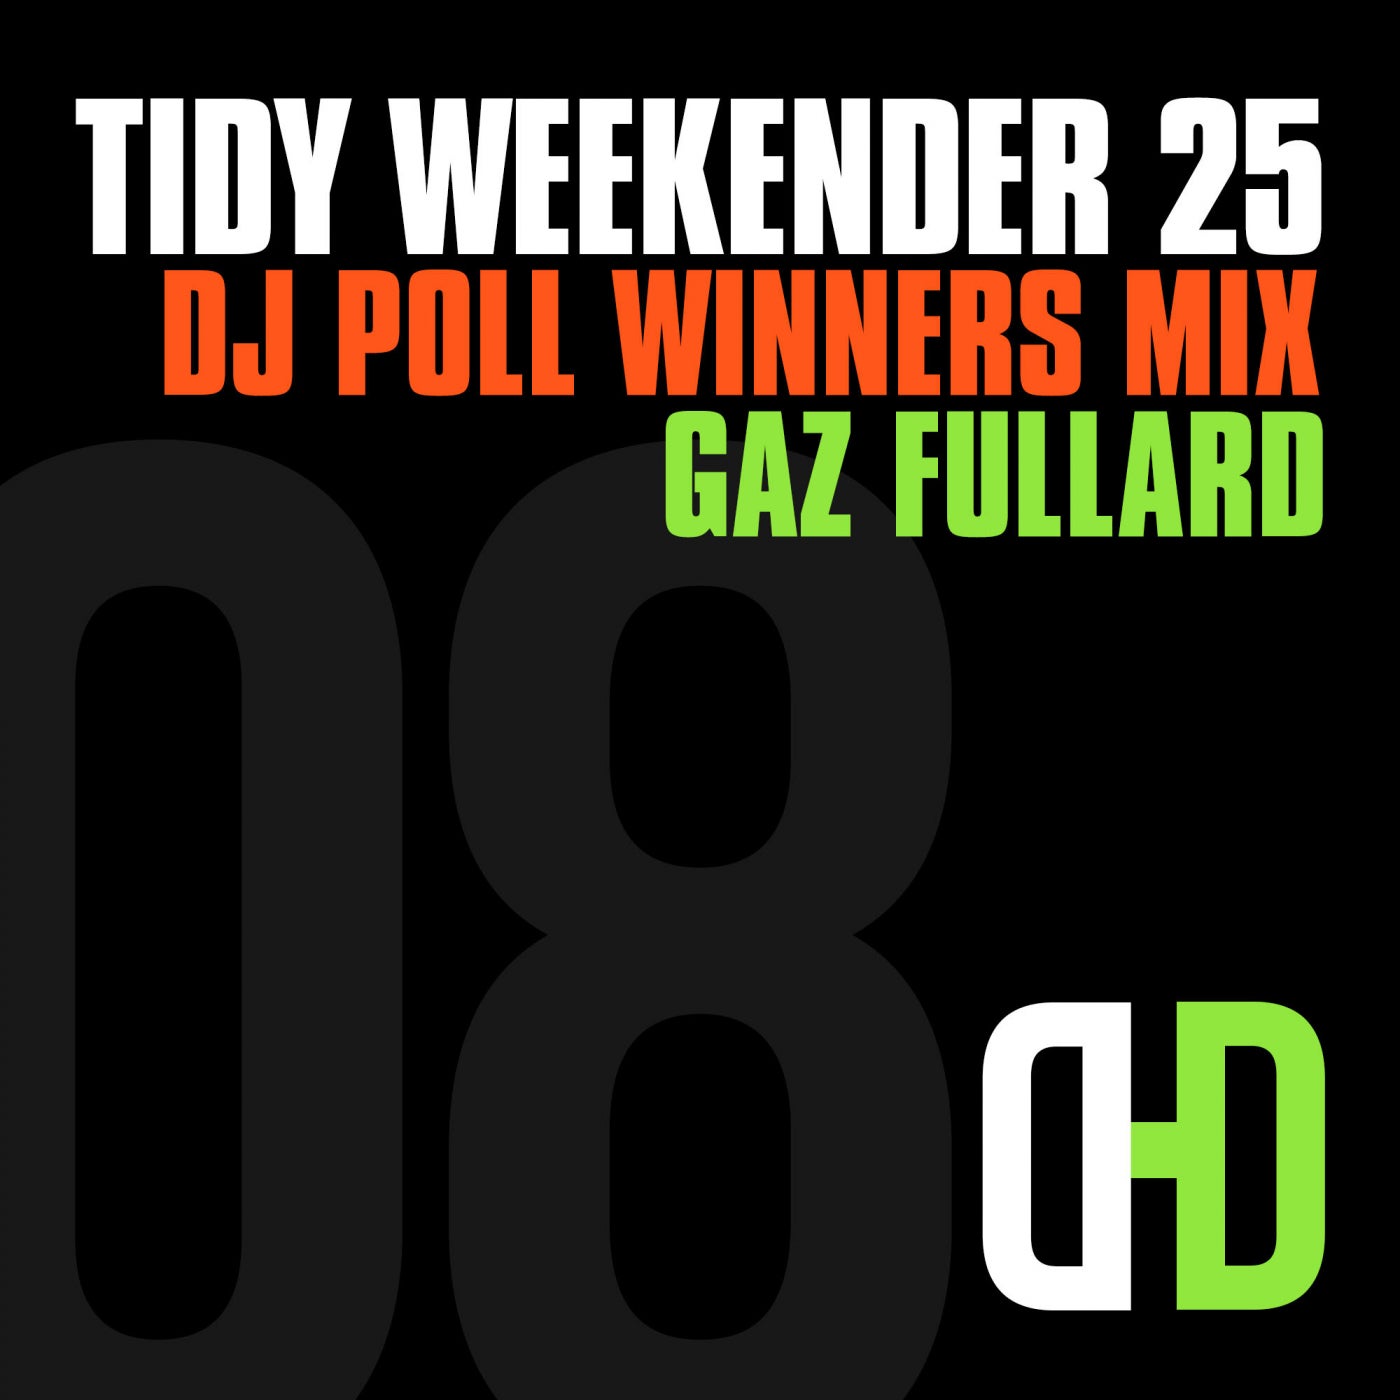 Tidy Weekender 25: DJ Poll Winners Mix 08 - Gaz Fullard